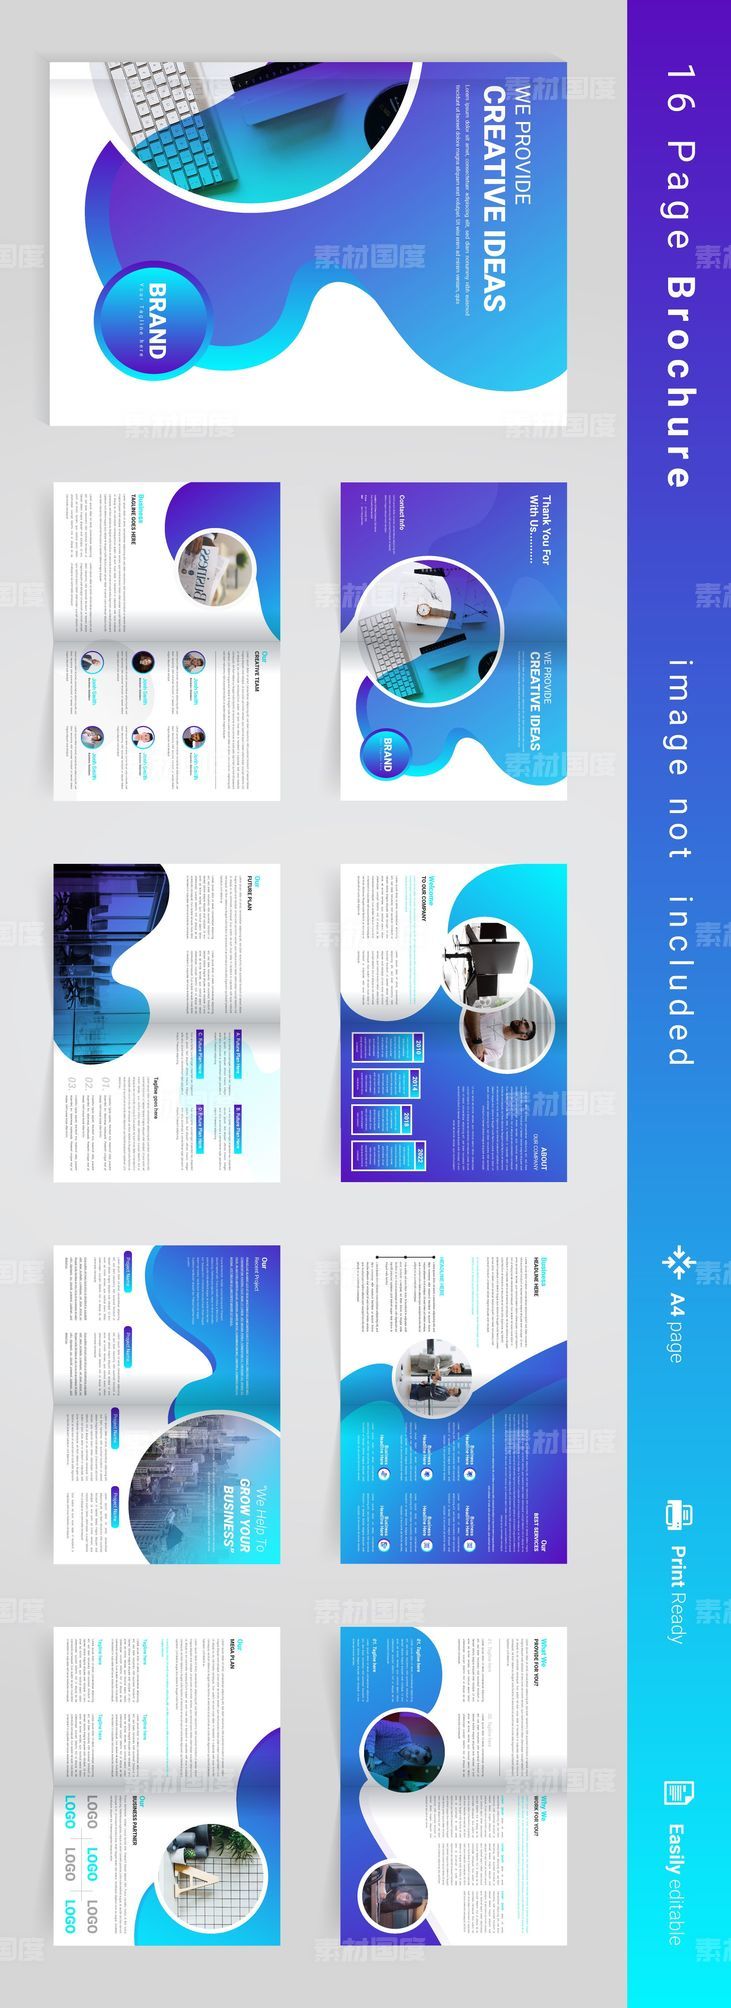 蓝色科技公司画册宣传册设计模板